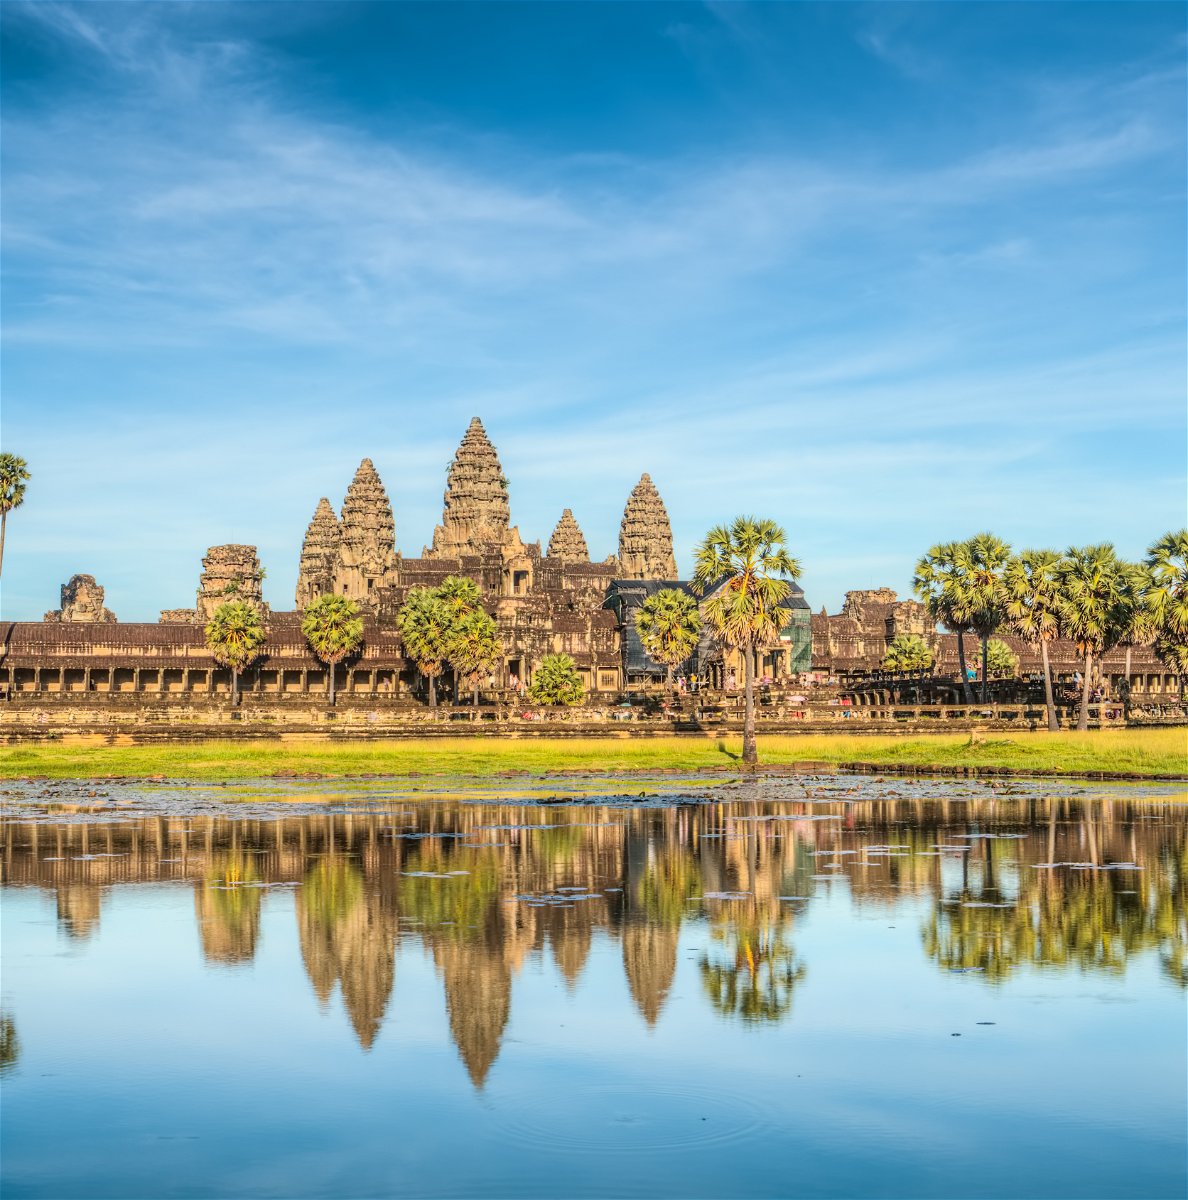 Angkor Wat reflected in a lake